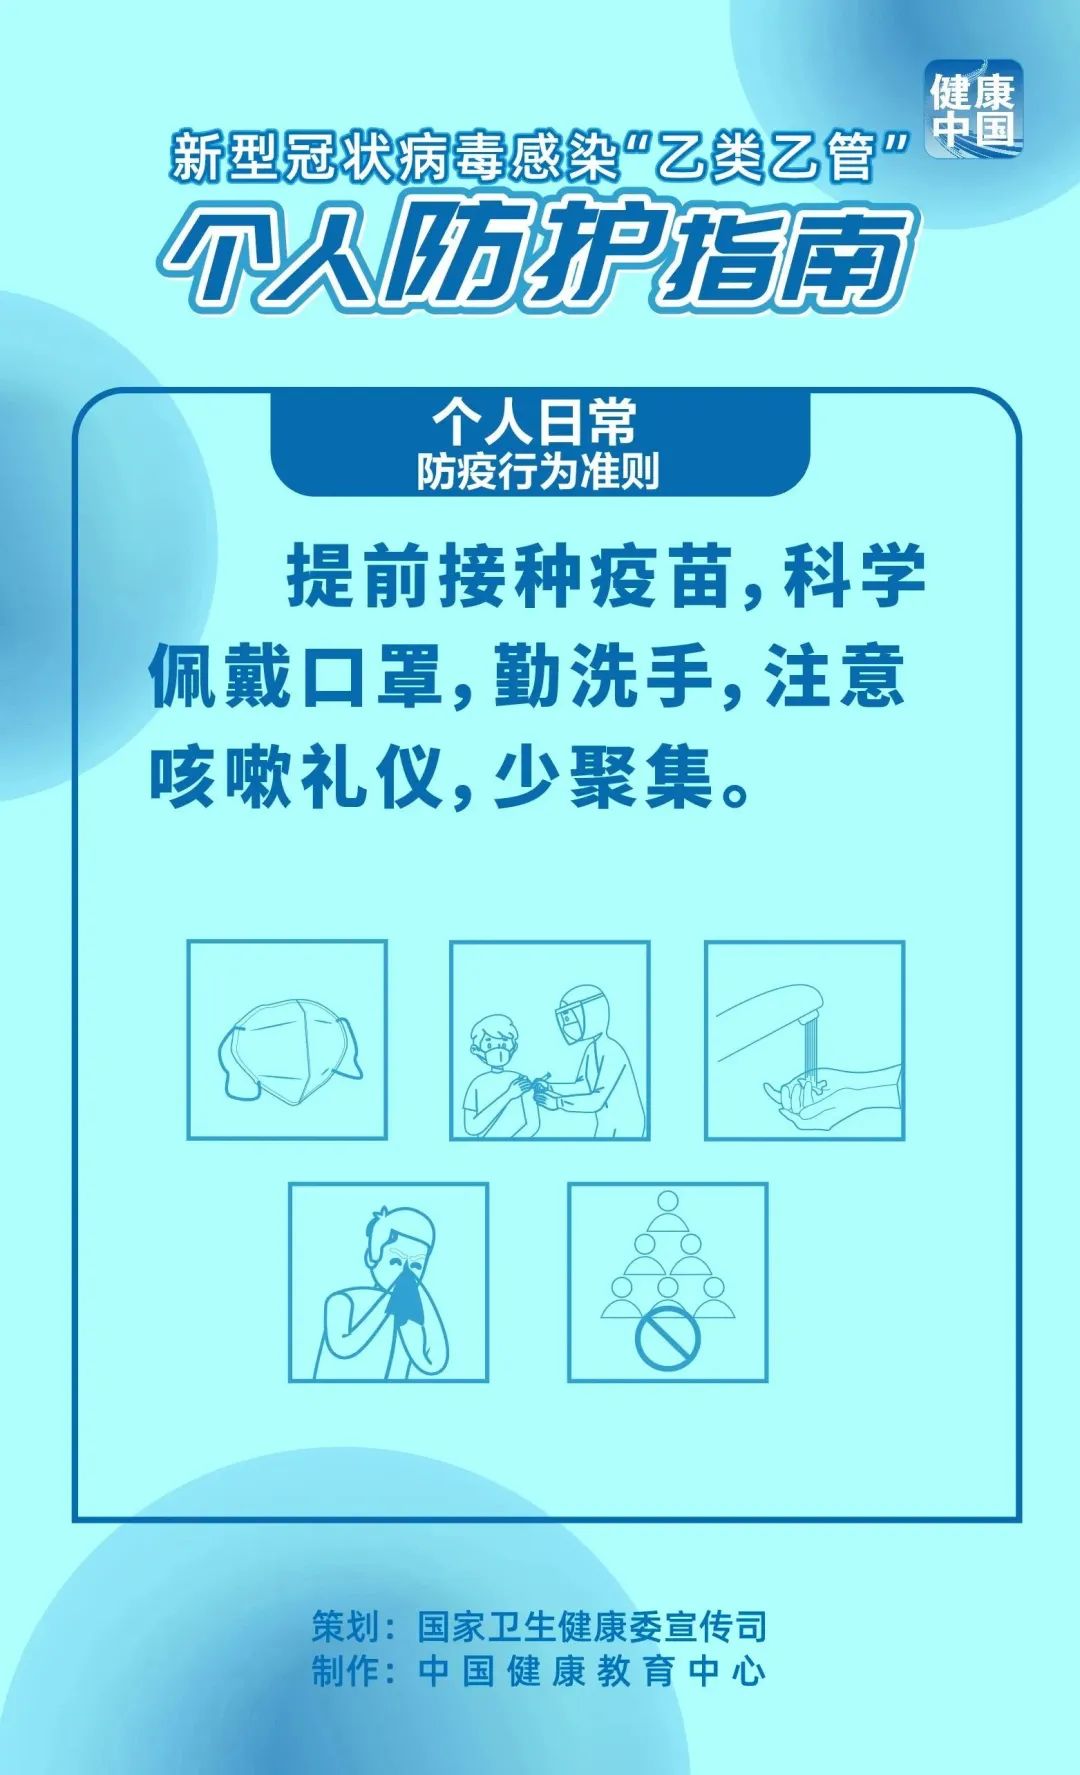 健康中国丨个人日常防疫行为准则